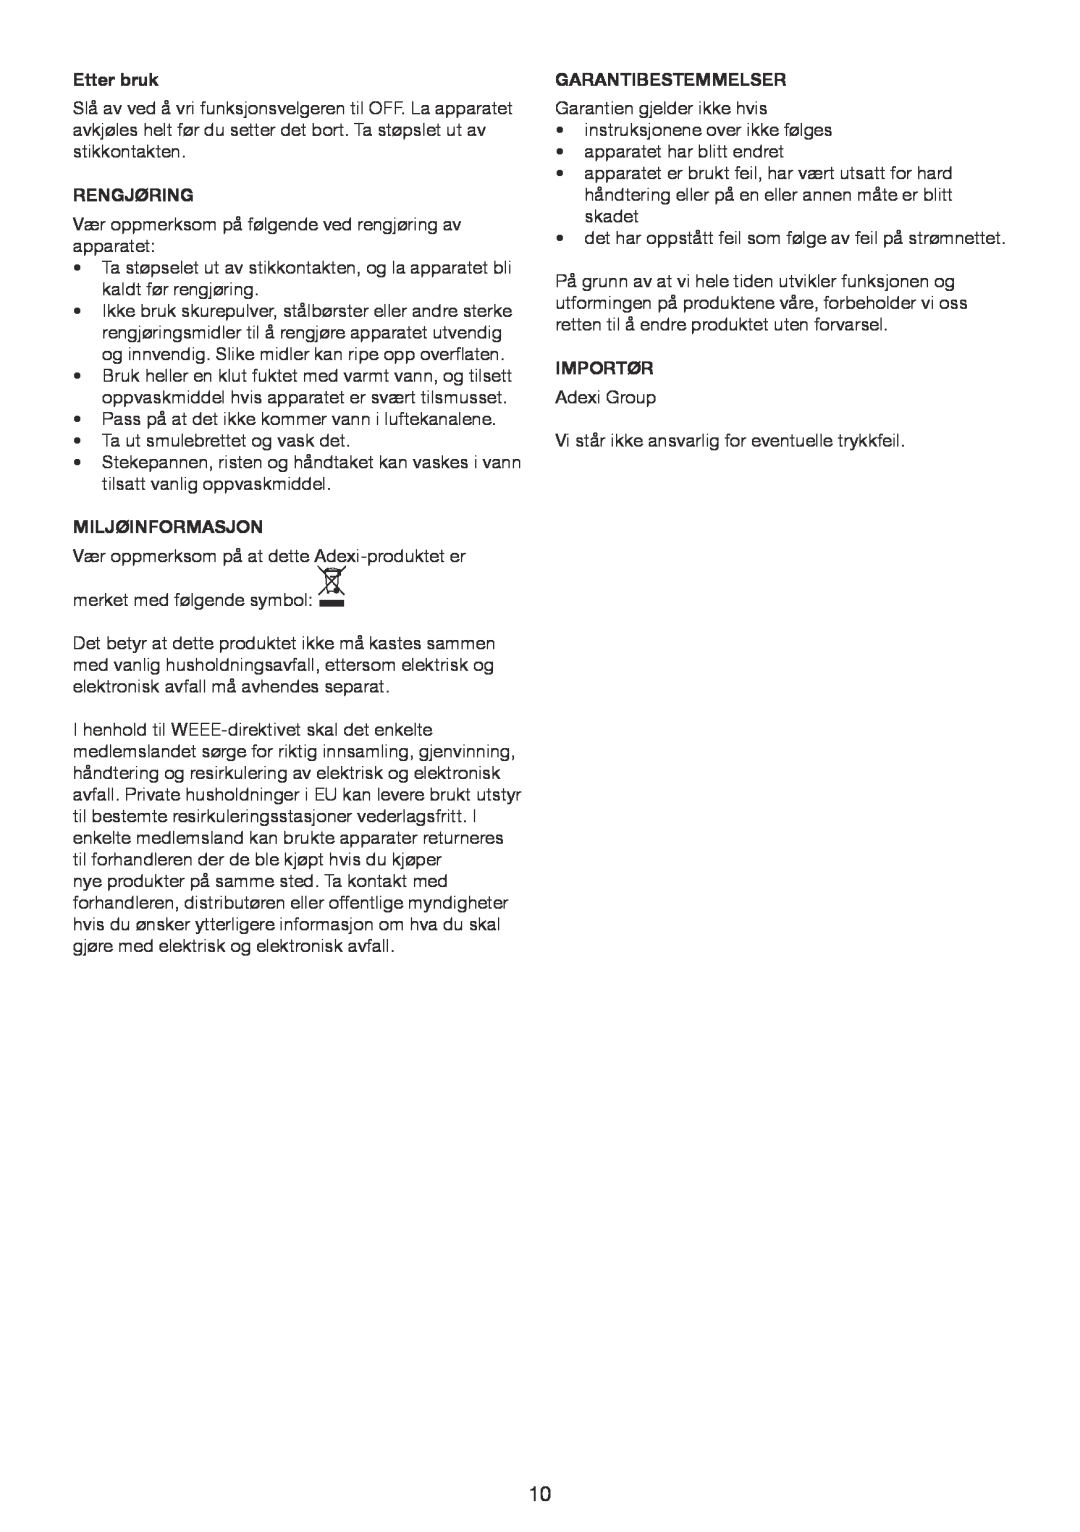 Melissa 4013D, 4033D manual Etter bruk, Rengjøring, Miljøinformasjon, Garantibestemmelser, Importør 